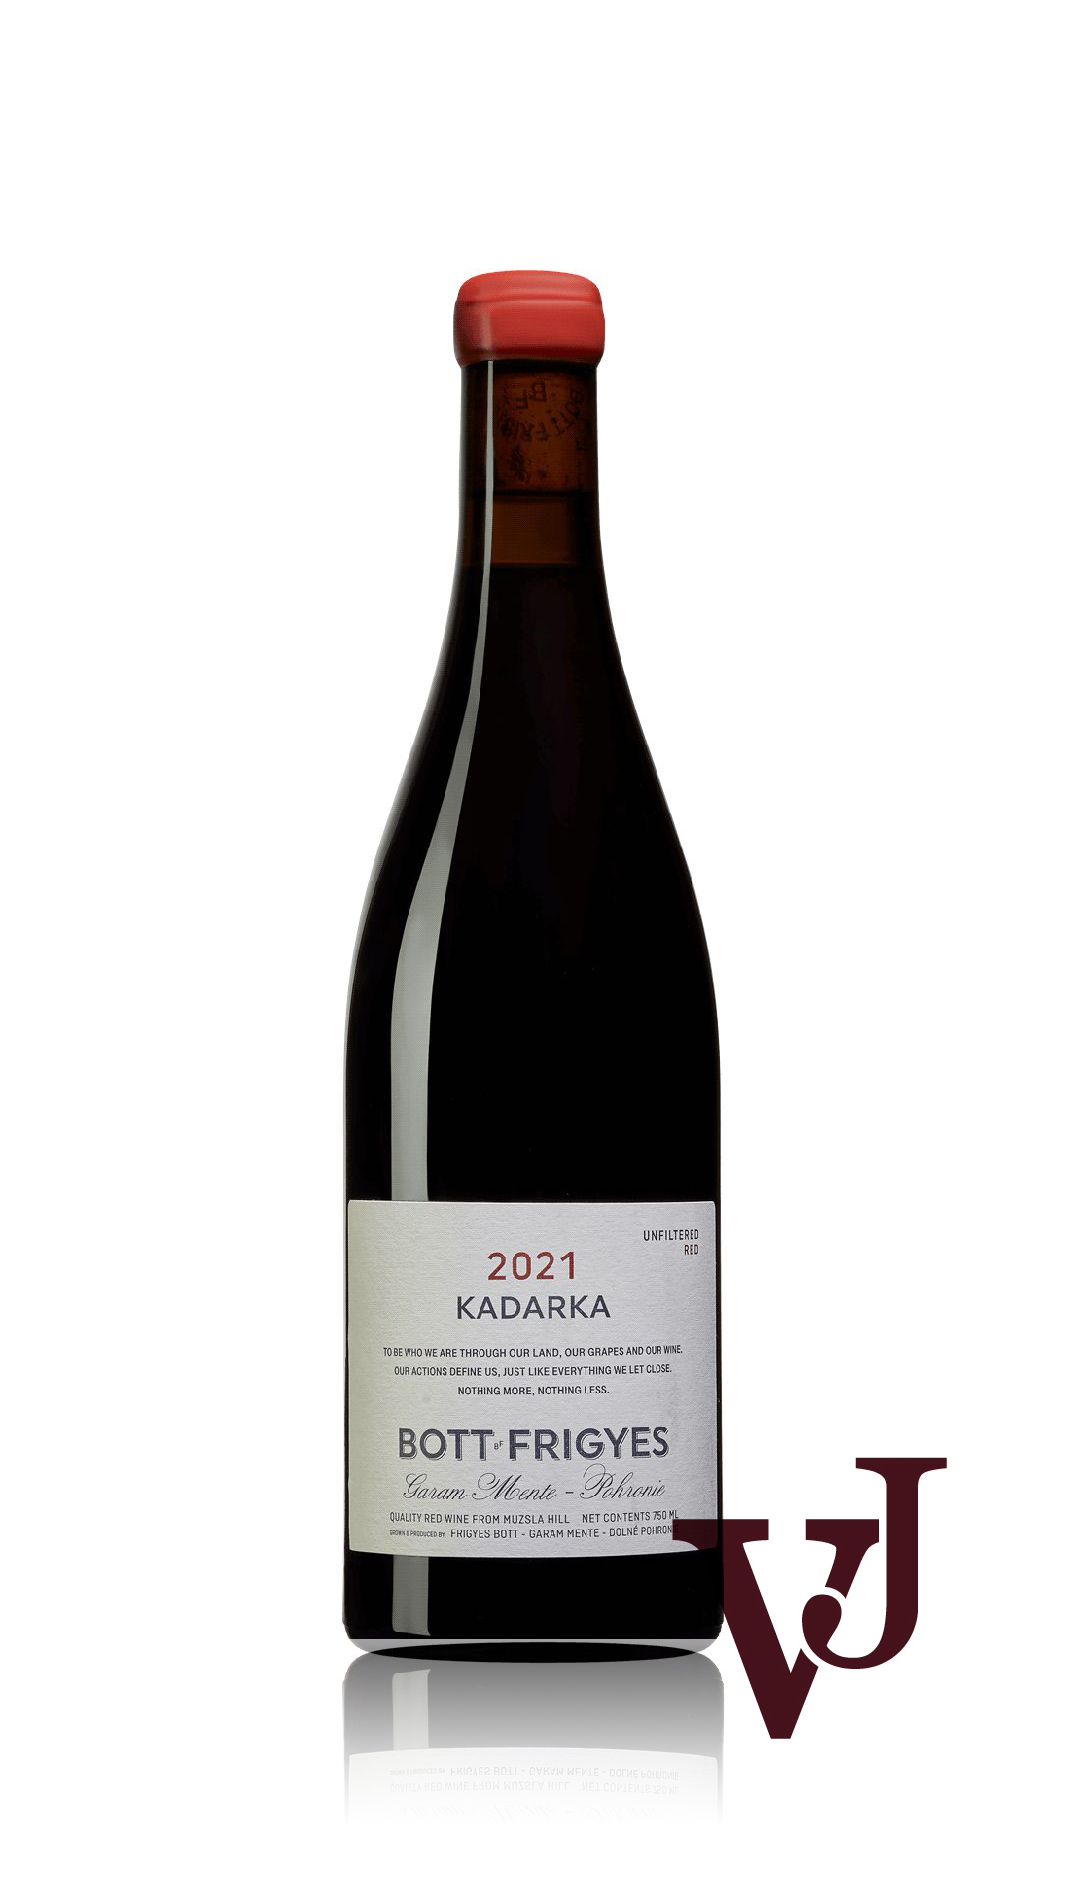 Rött Vin - Bott Frigyes Kadarka 2021 artikel nummer 9231501 från producenten Bott Frigyes från Slovakien.